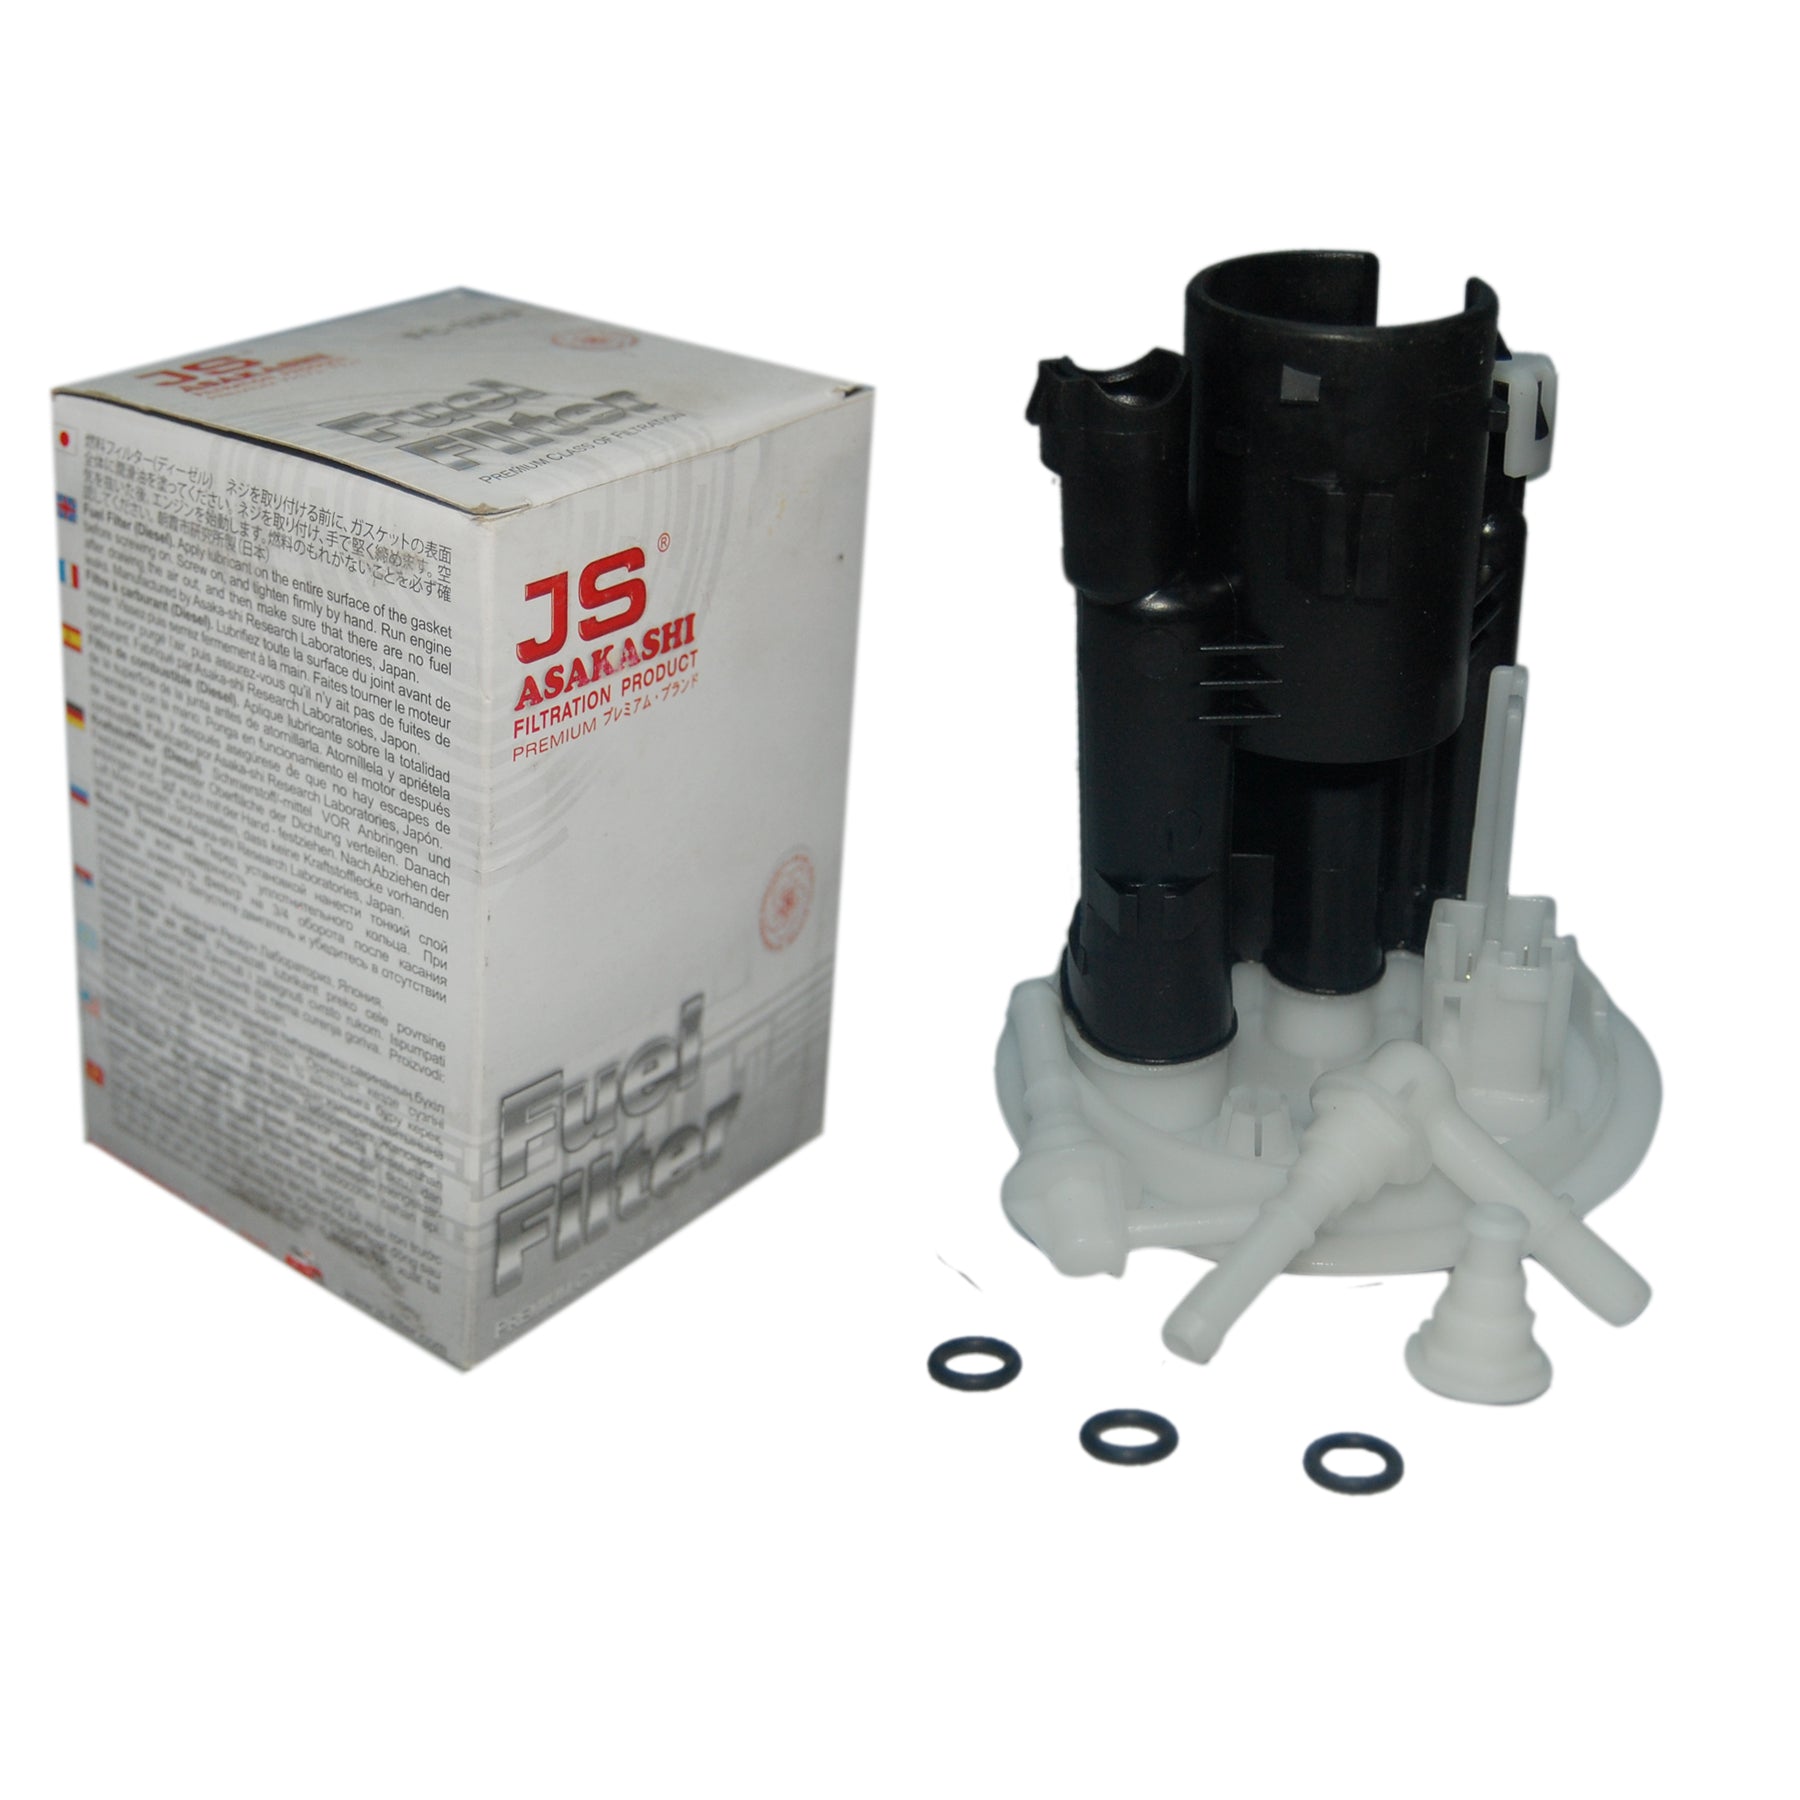 Fuel Filter, JS, MR431453, FS6501U (001223) - Win Store